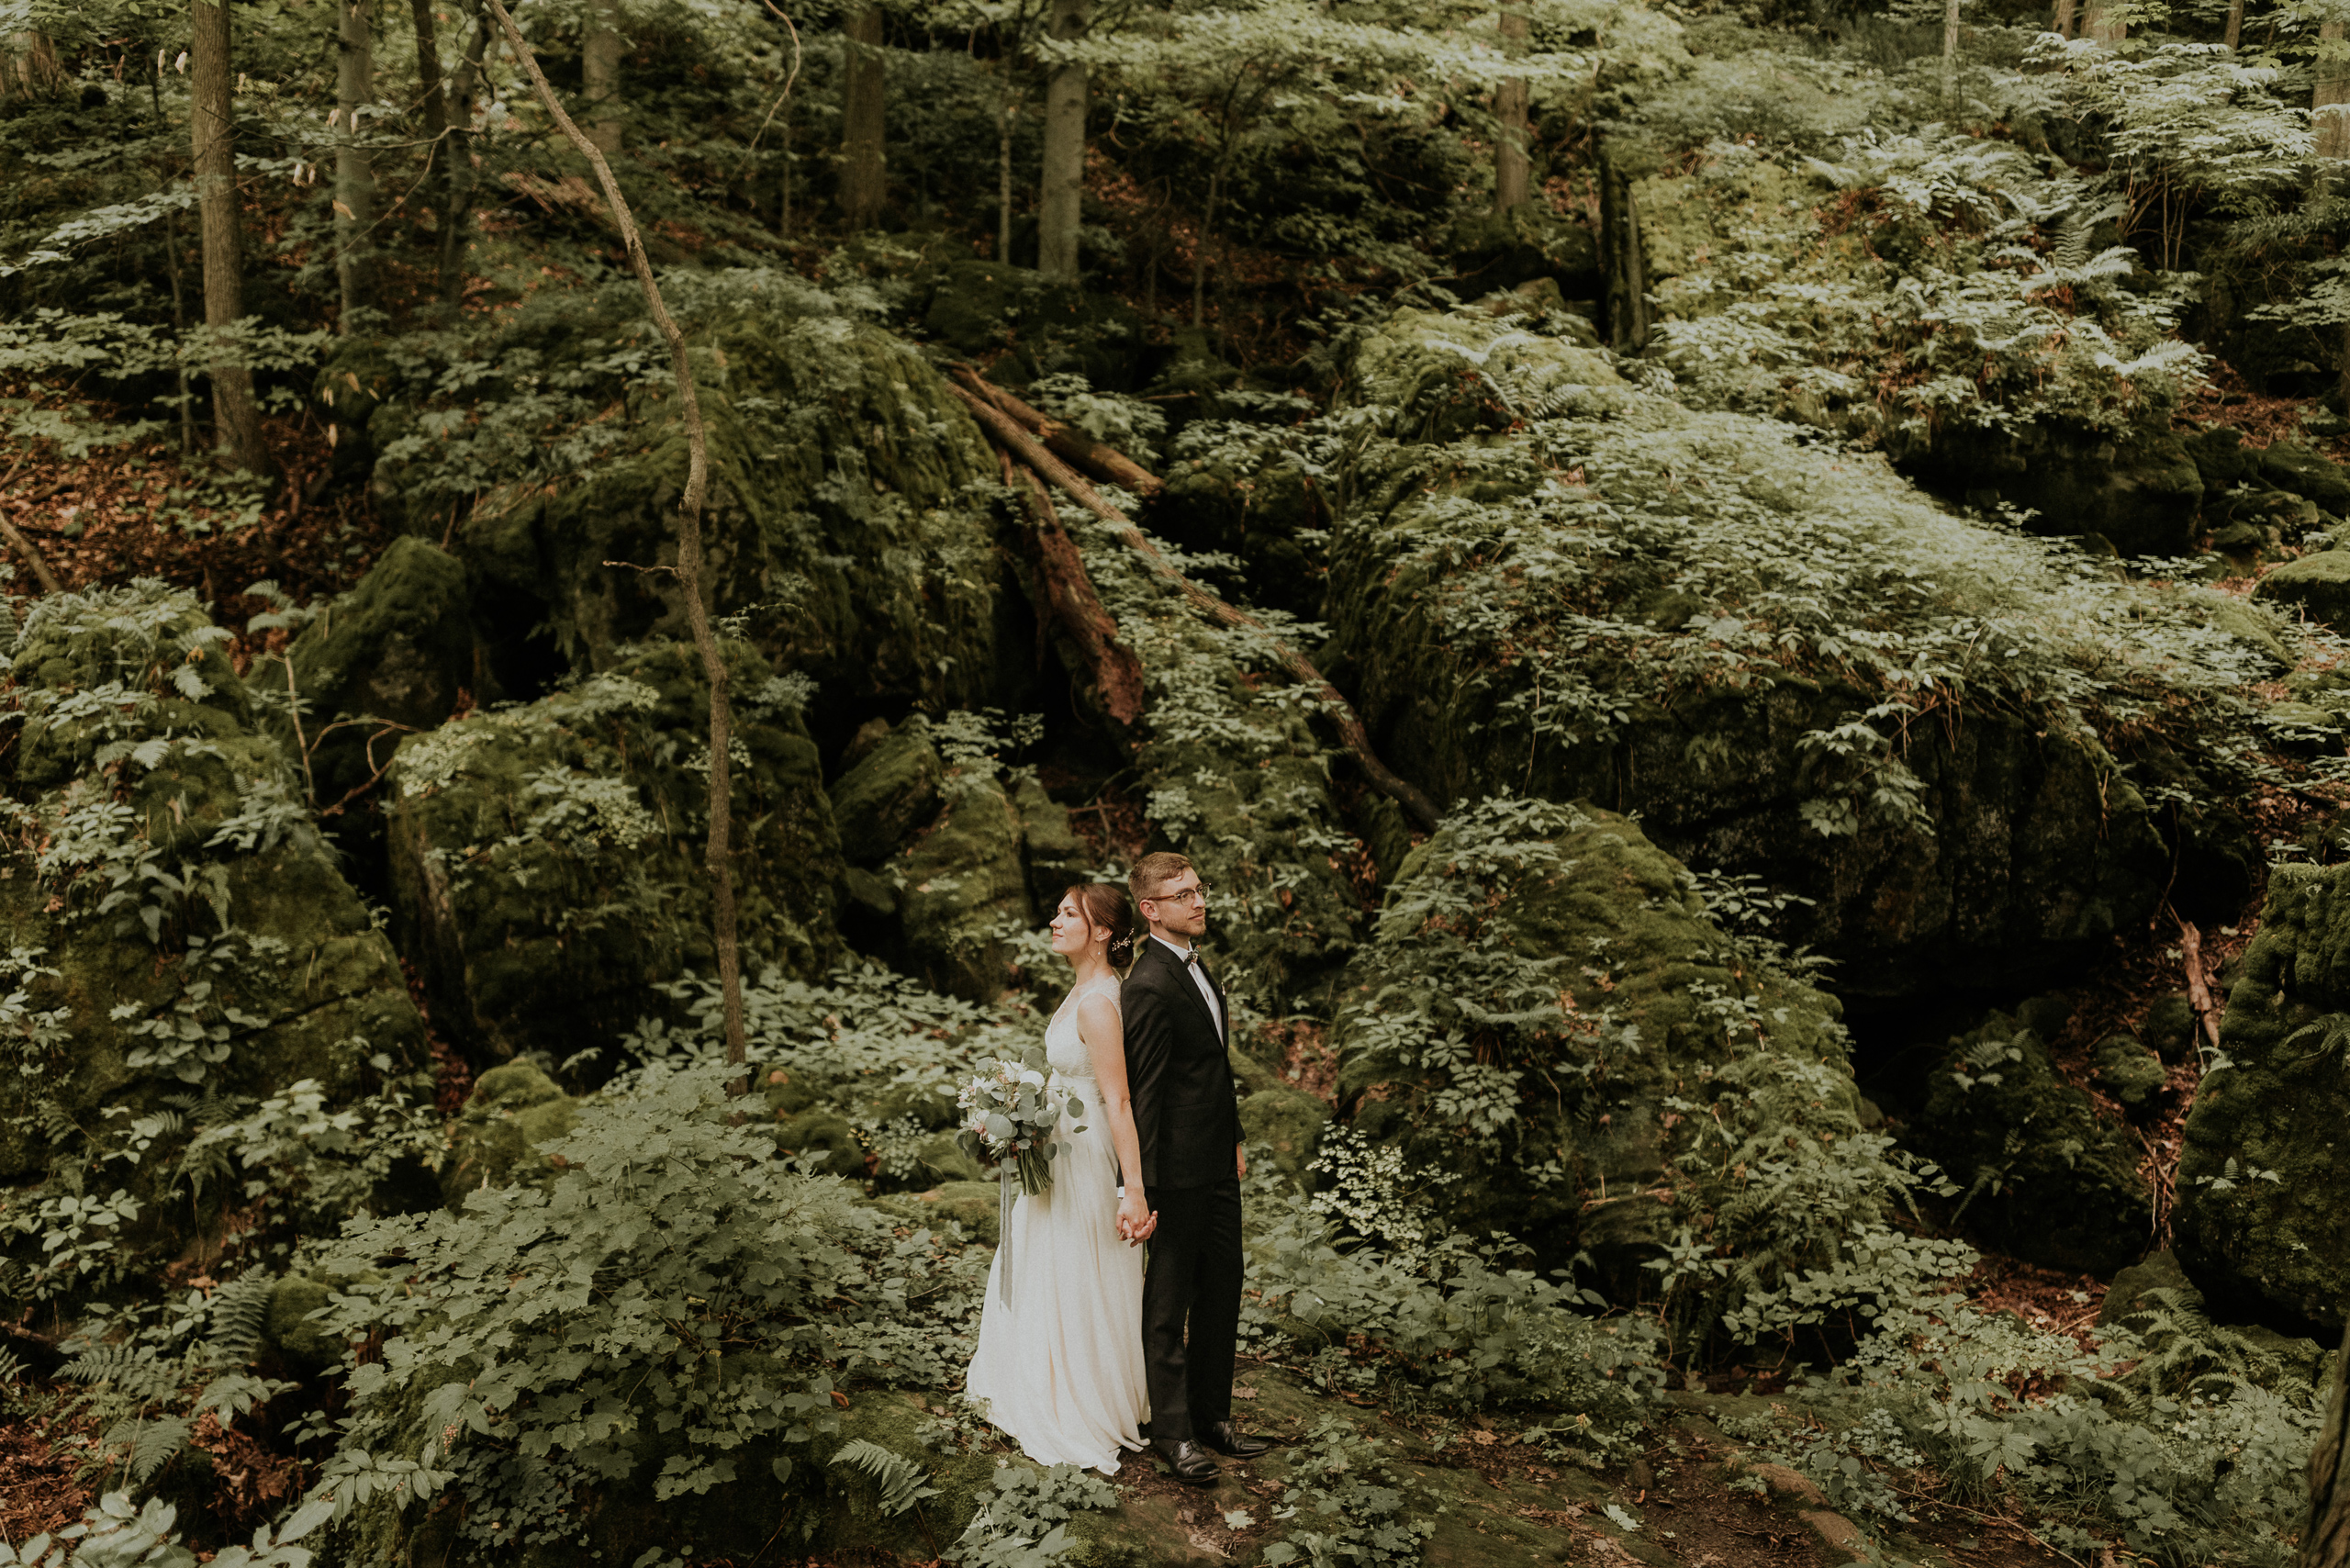 romantic forest wedding photos inspiration niagara afterglow ima